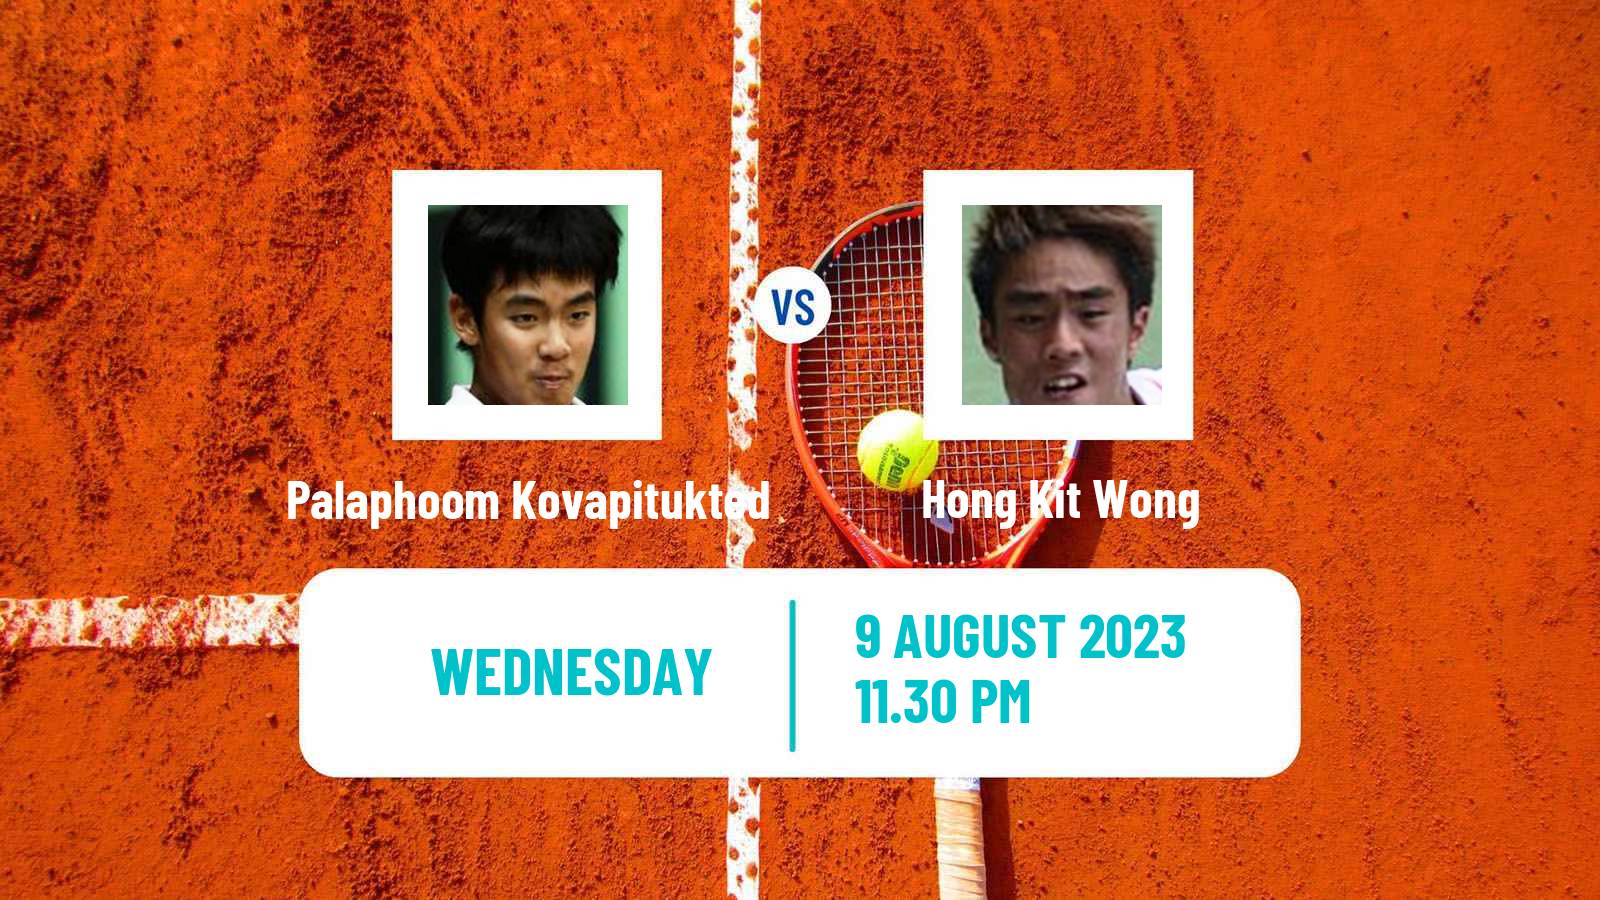 Tennis ITF M25 Jakarta 6 Men Palaphoom Kovapitukted - Hong Kit Wong